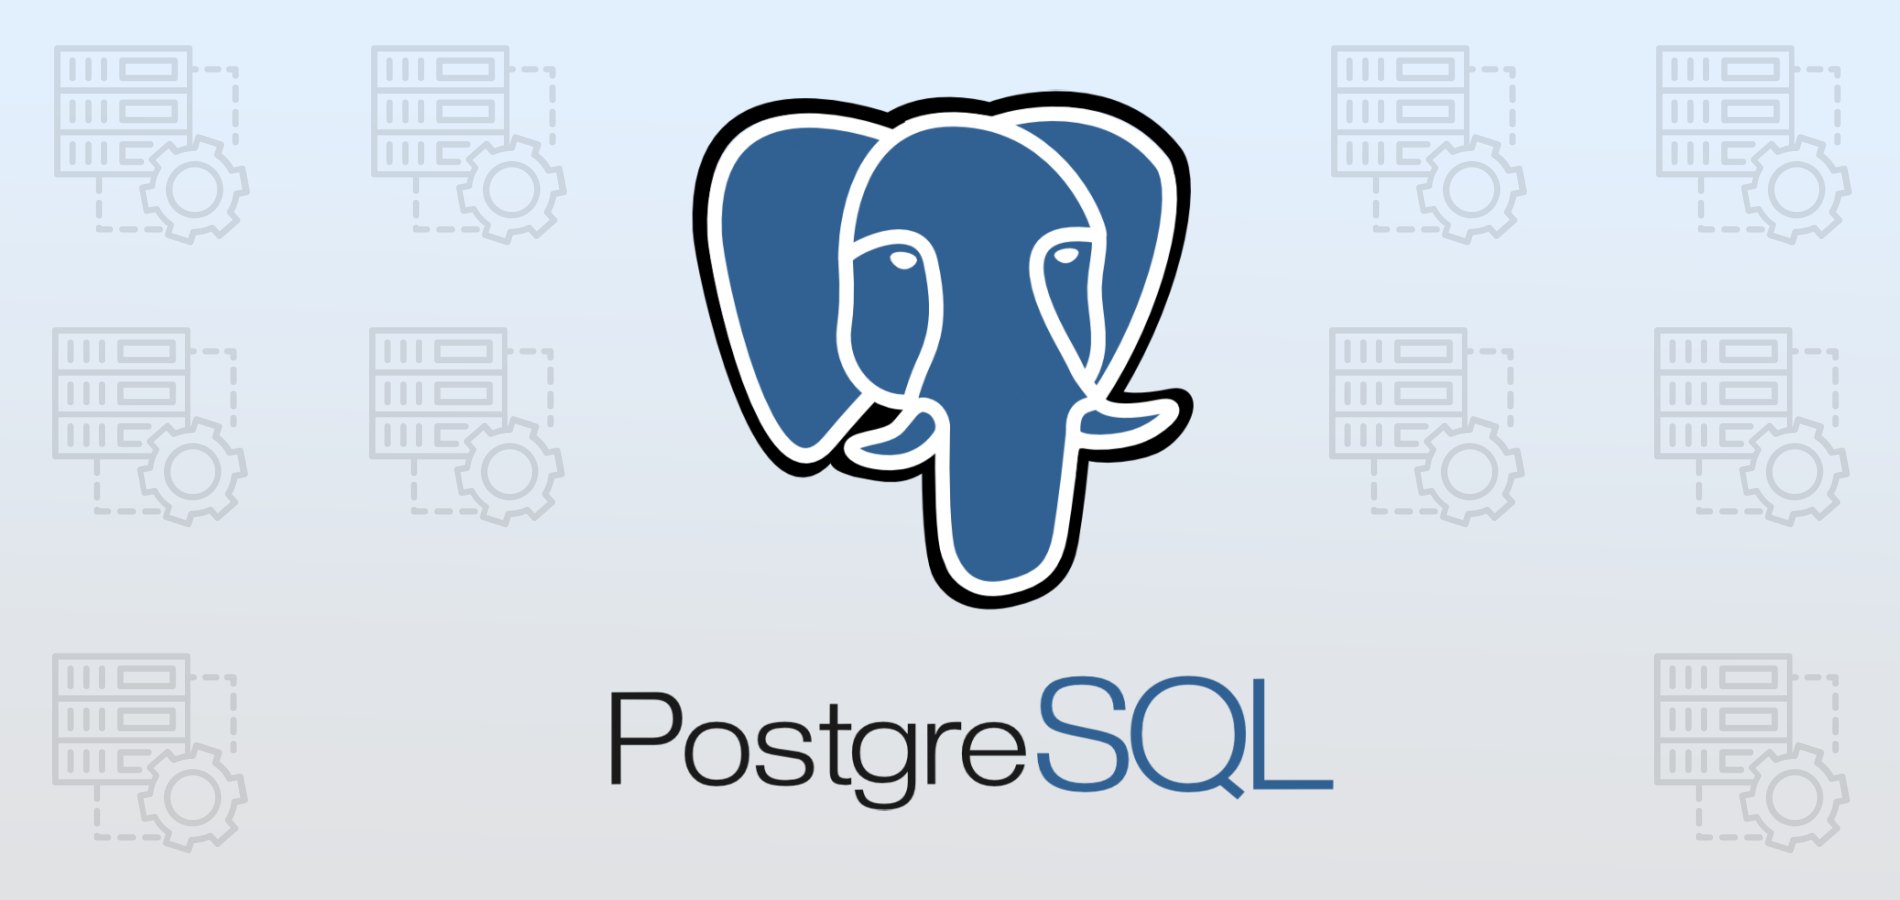 ТОП-17 курсов PostgreSQL, включая онлайн-обучение с нуля